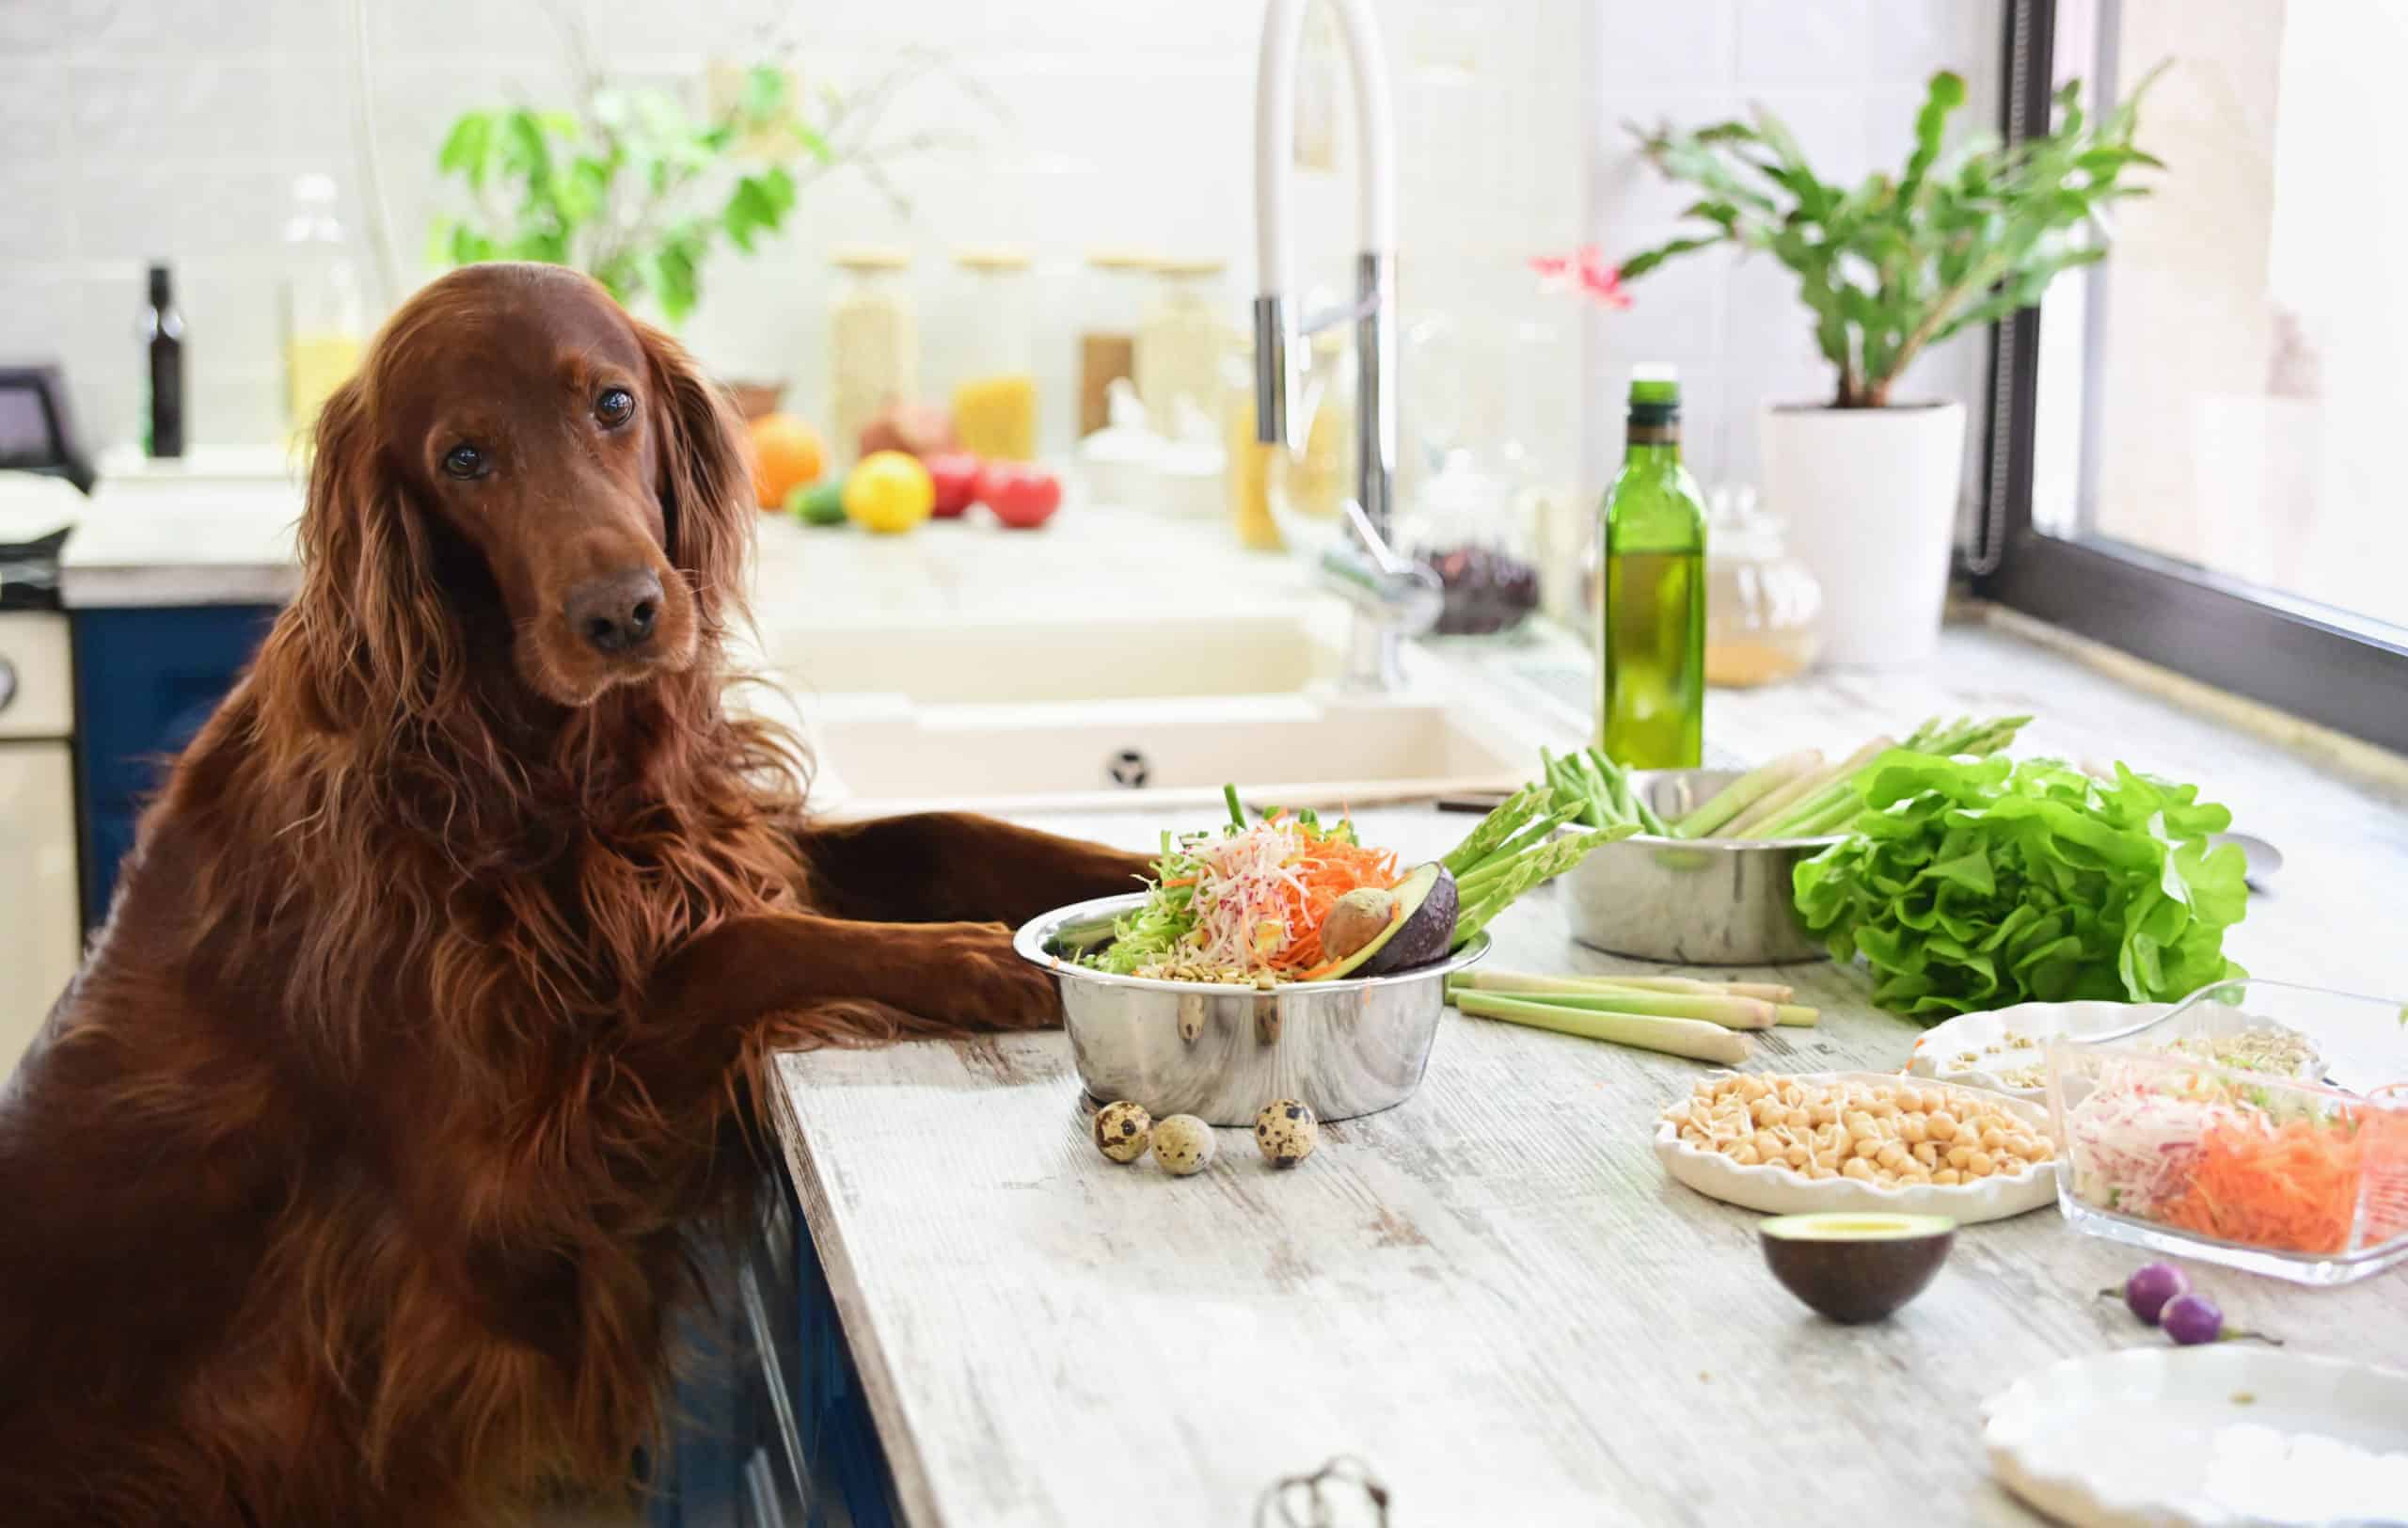 Hund in der Küche mit gesunden Lebensmitteln wie Quinoa und Gemüse